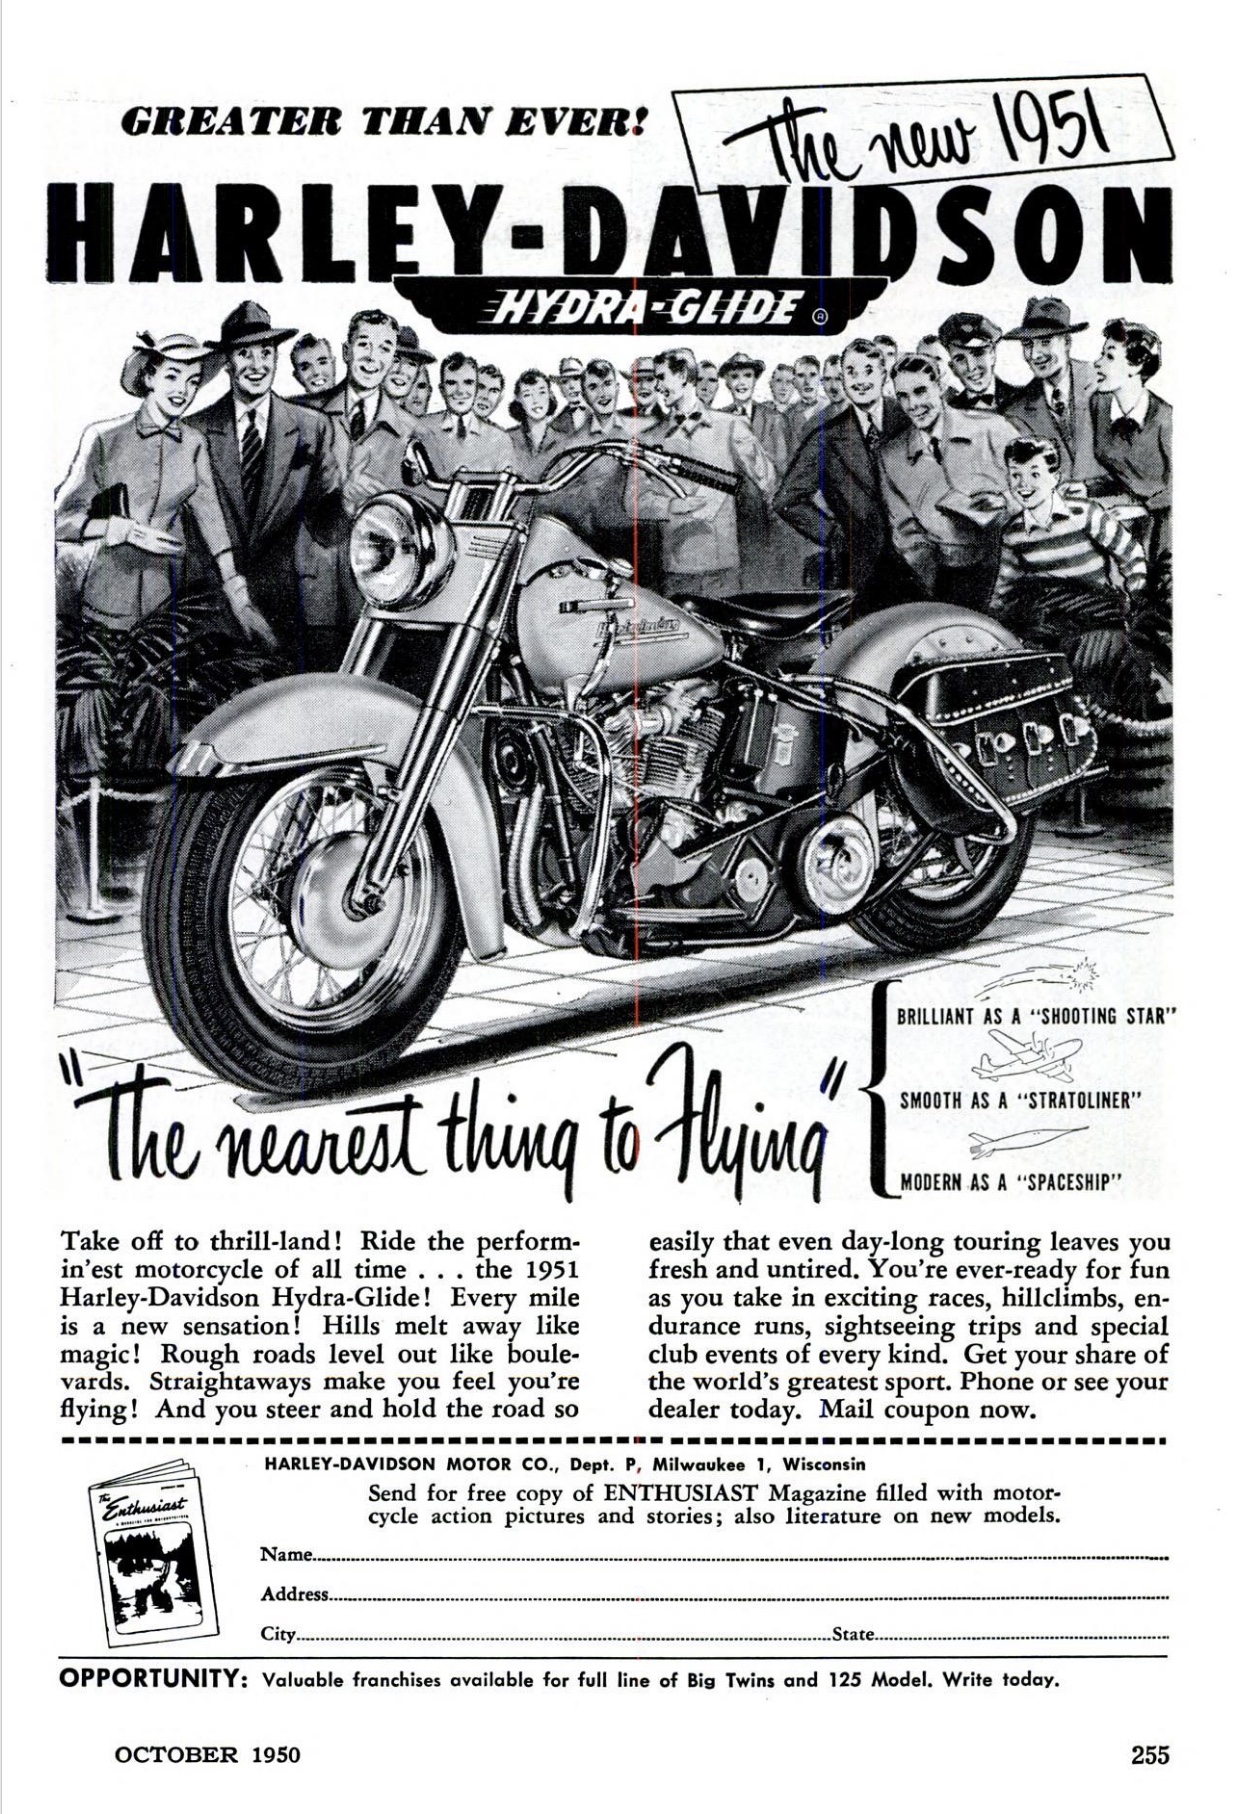 1951 - Anuncio Harley-Davidson